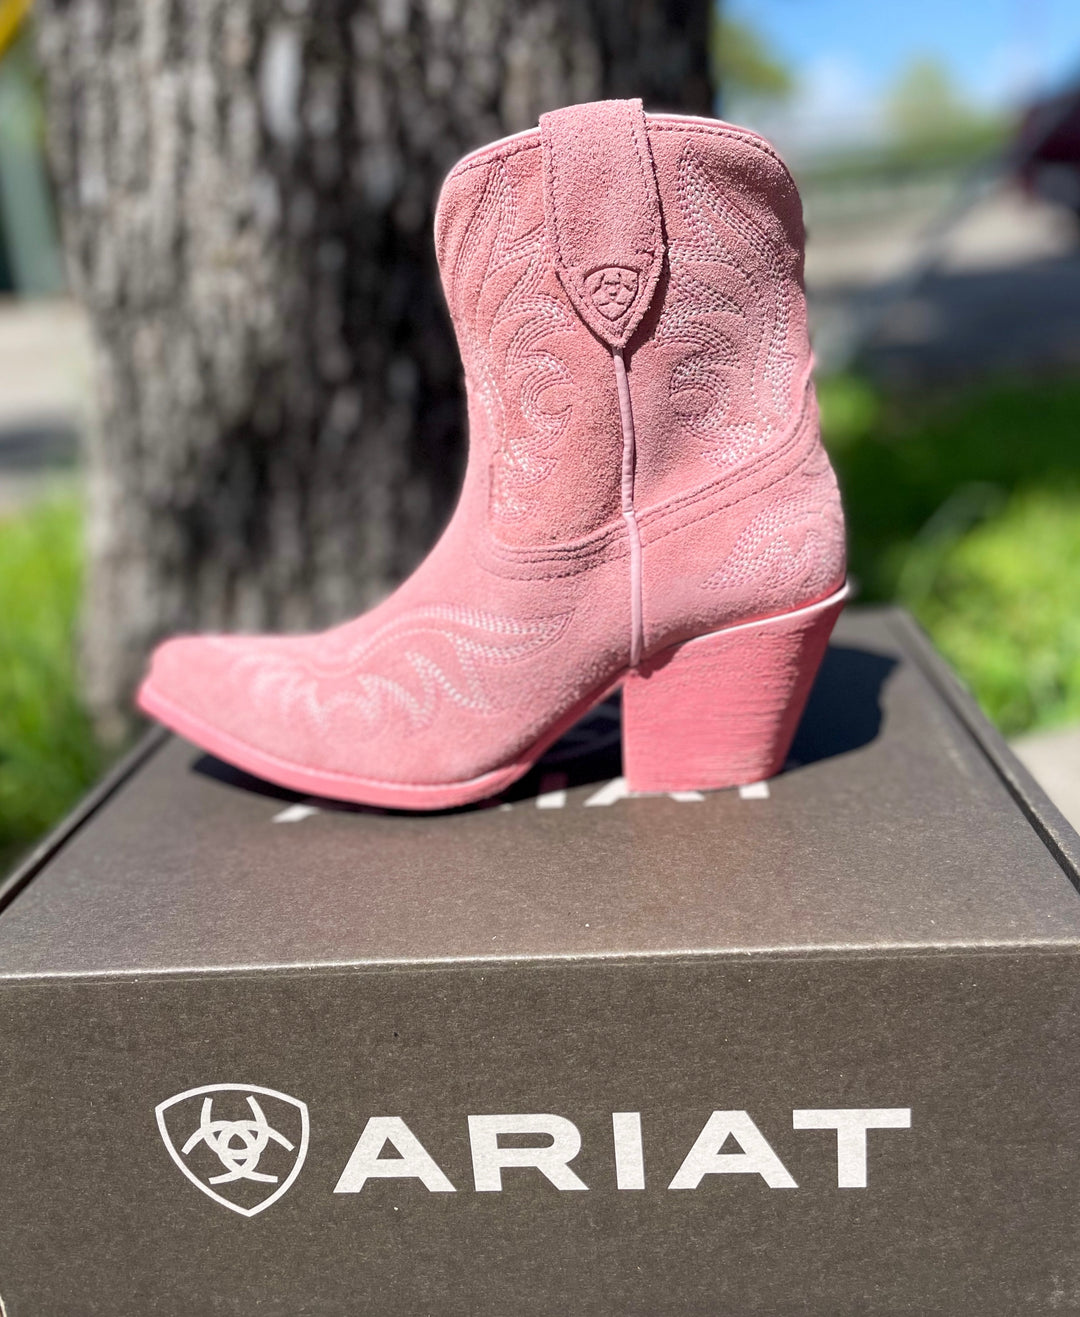 Arait Women's Chandler Western Boots - Carnation Pink Suede